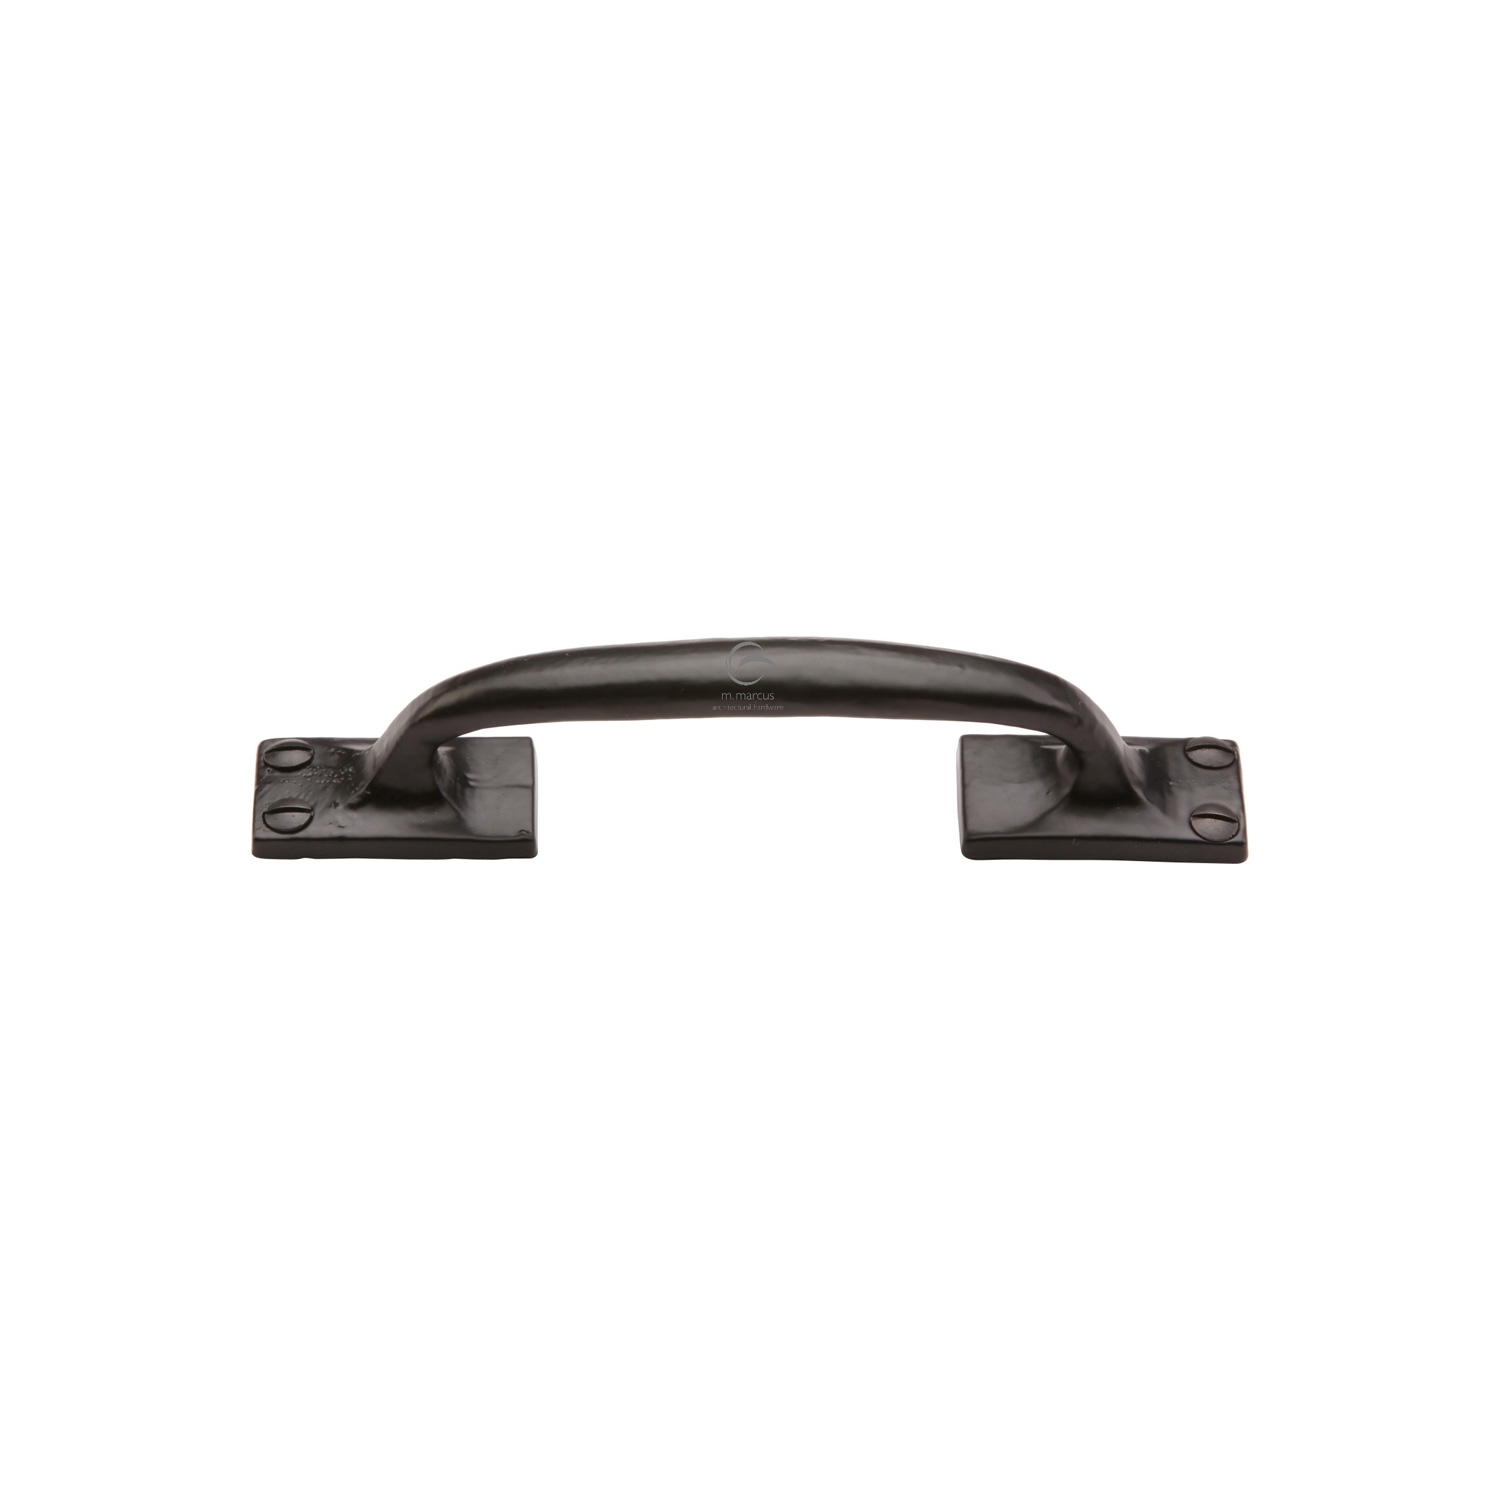 Black Iron Rustic Cabinet Pull Cranked Design 159mm